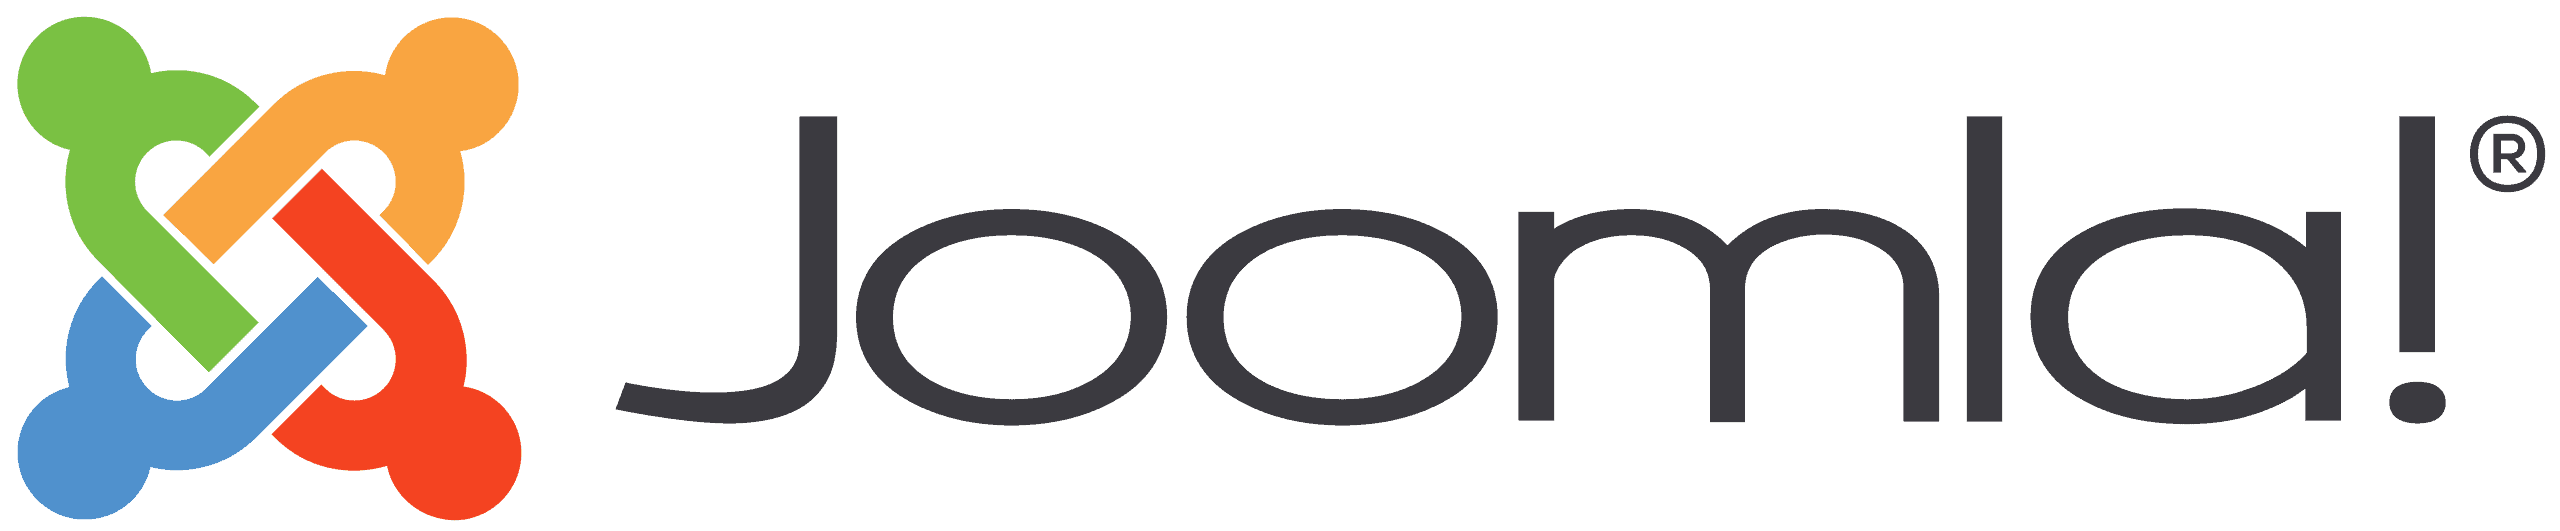 joomla-vs-wordpress-logo-hospedalia